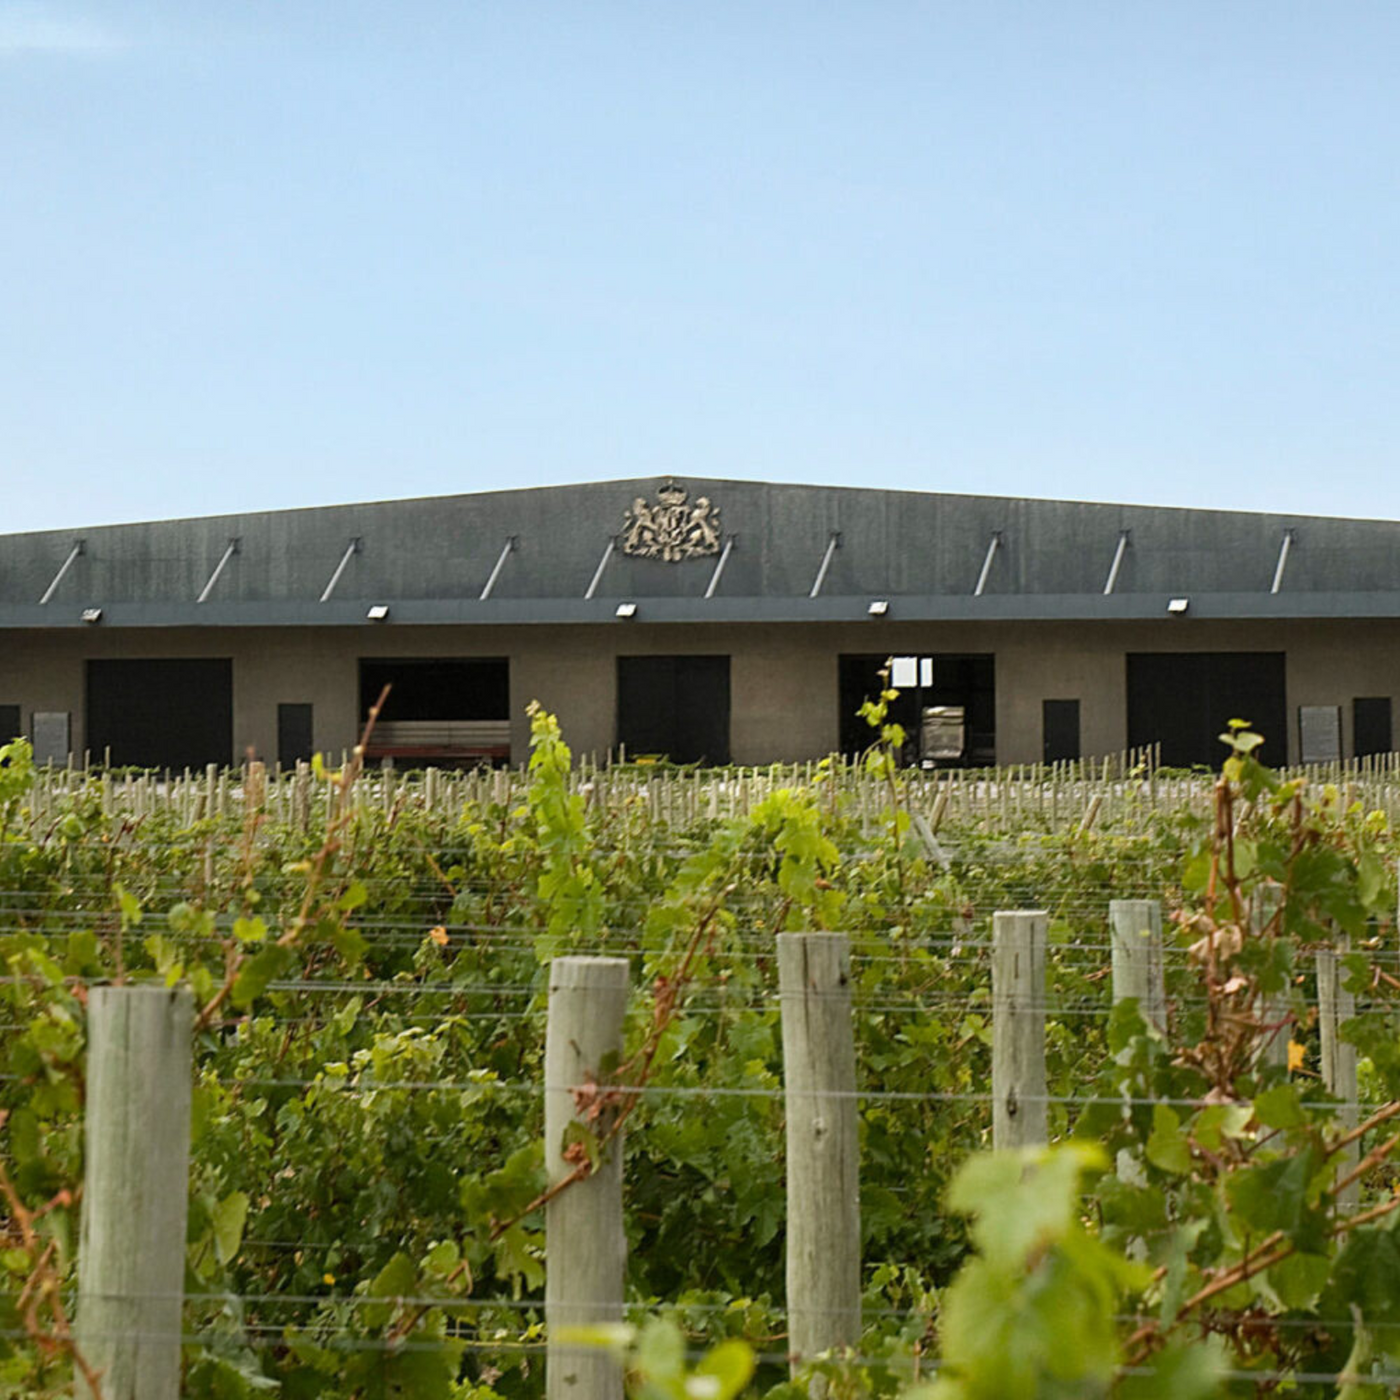 De Portillo wijnen uit Mendoza en van het bekende Bodegas Salentein bestel je bij Flesjewijn.com